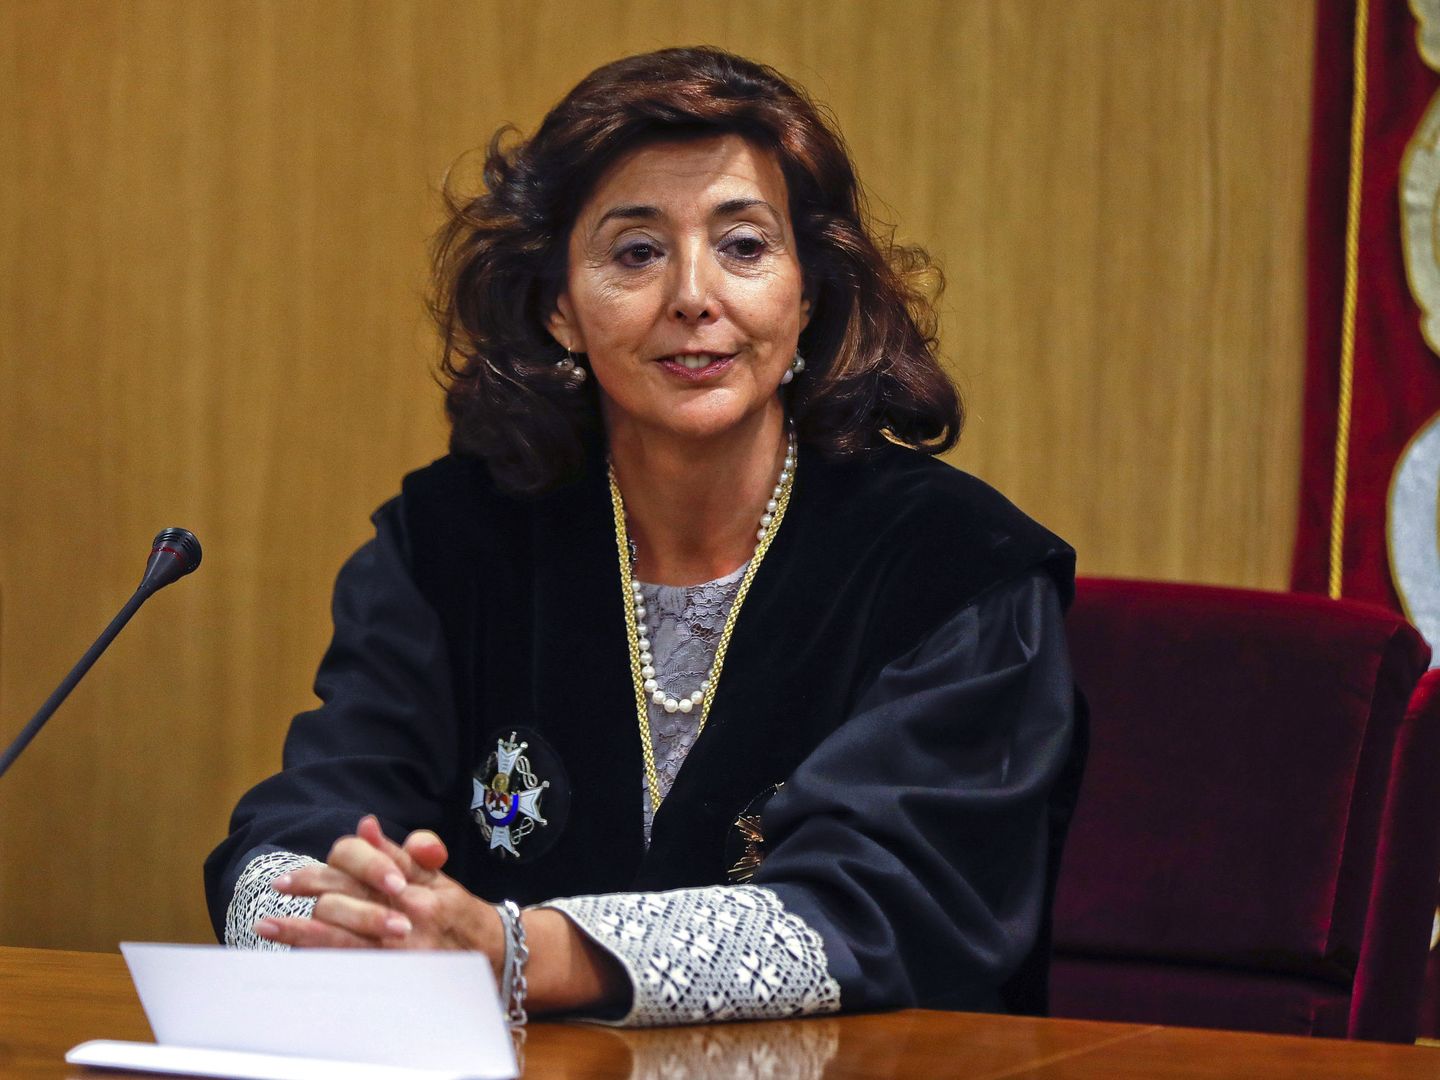 Espejel tras su toma posesión como presidenta de la Sala de lo Penal de la Audiencia. (EFE)